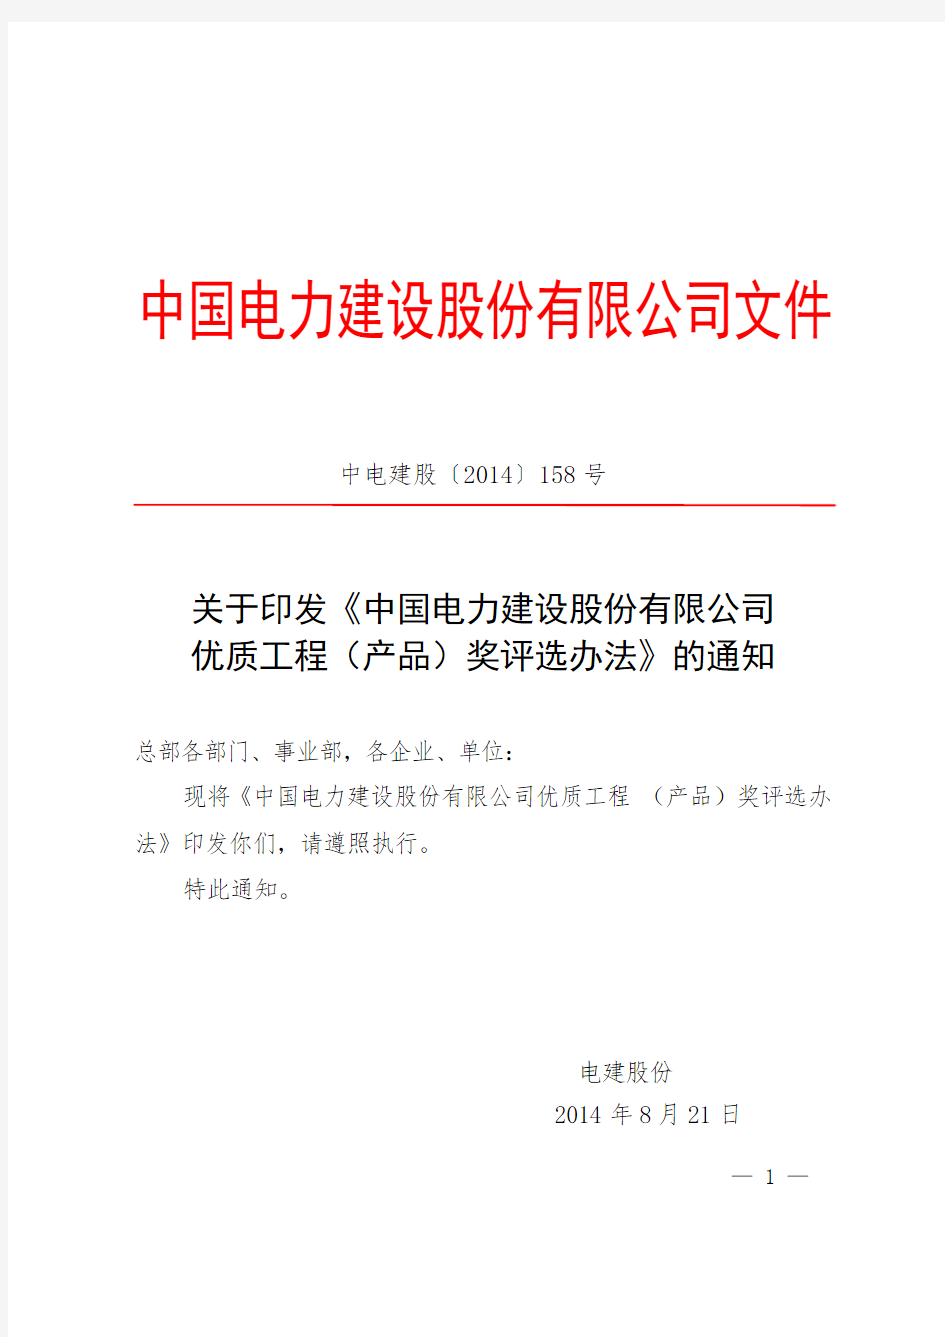 中国电力建设股份有限公司优质工程(产品)奖评选办法(中电建股〔2014〕158号)